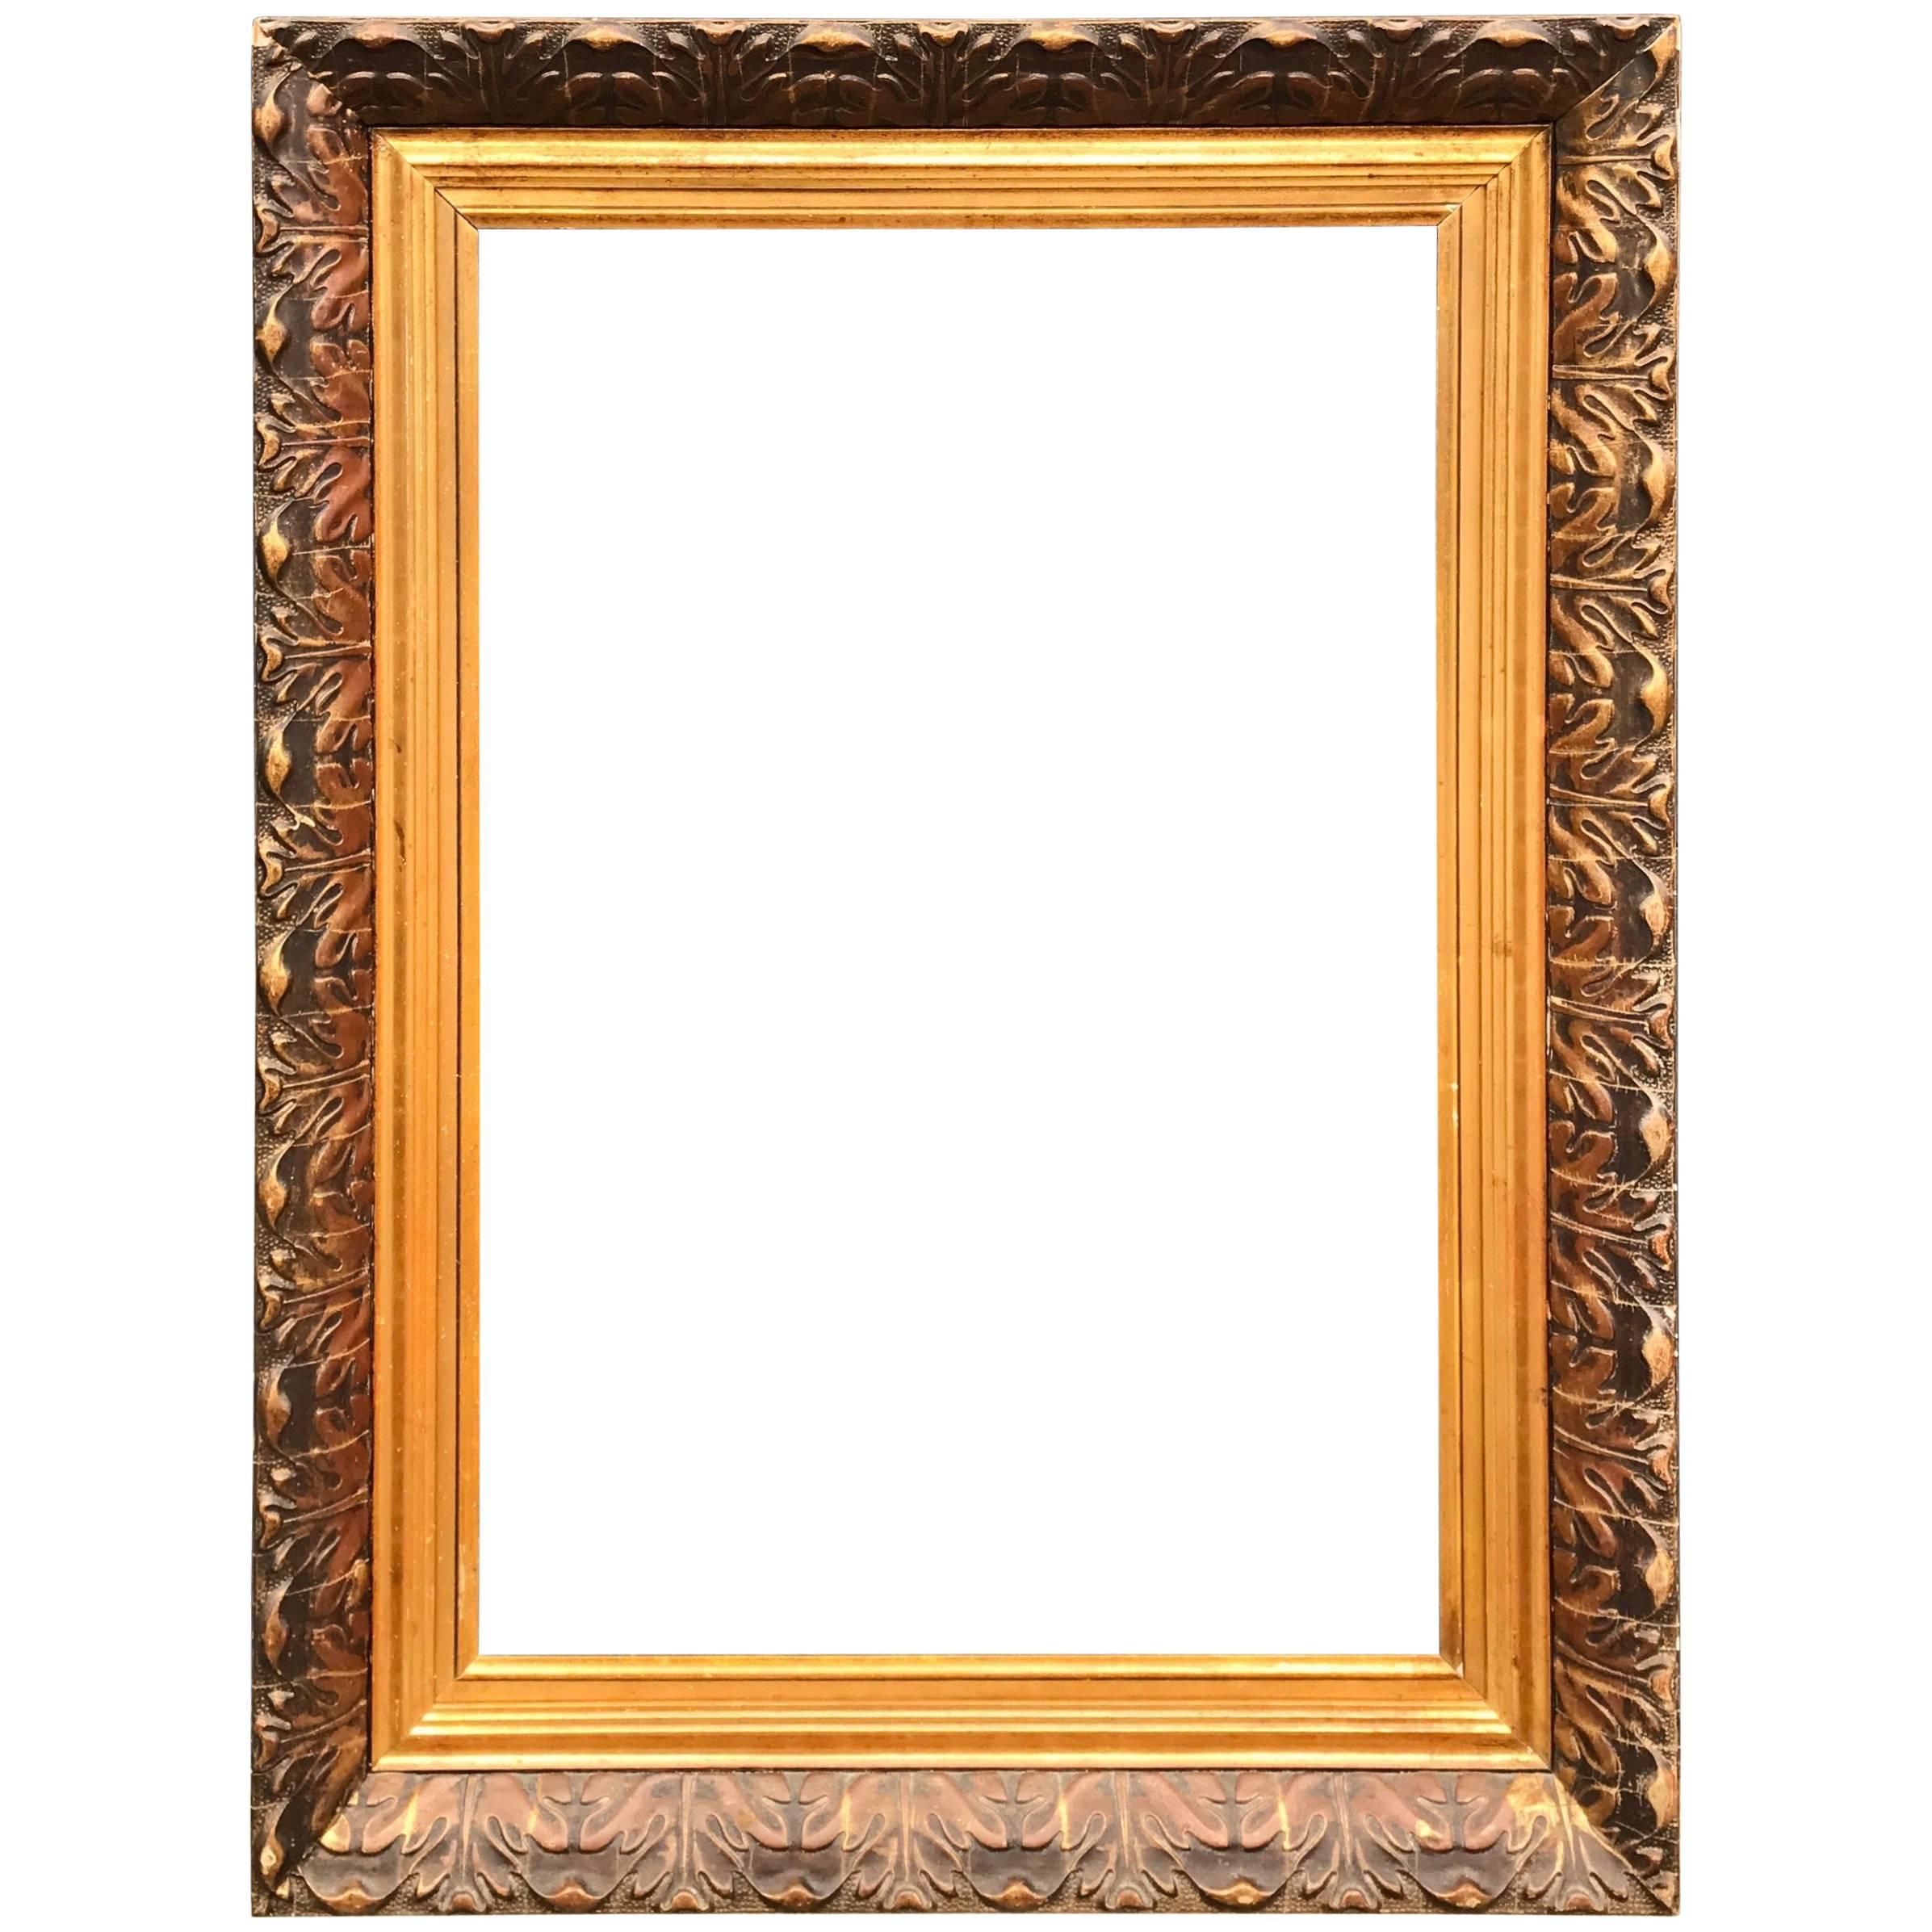 Grande peinture ou cadre de miroir ancien doré décoratif avec motifs de feuilles